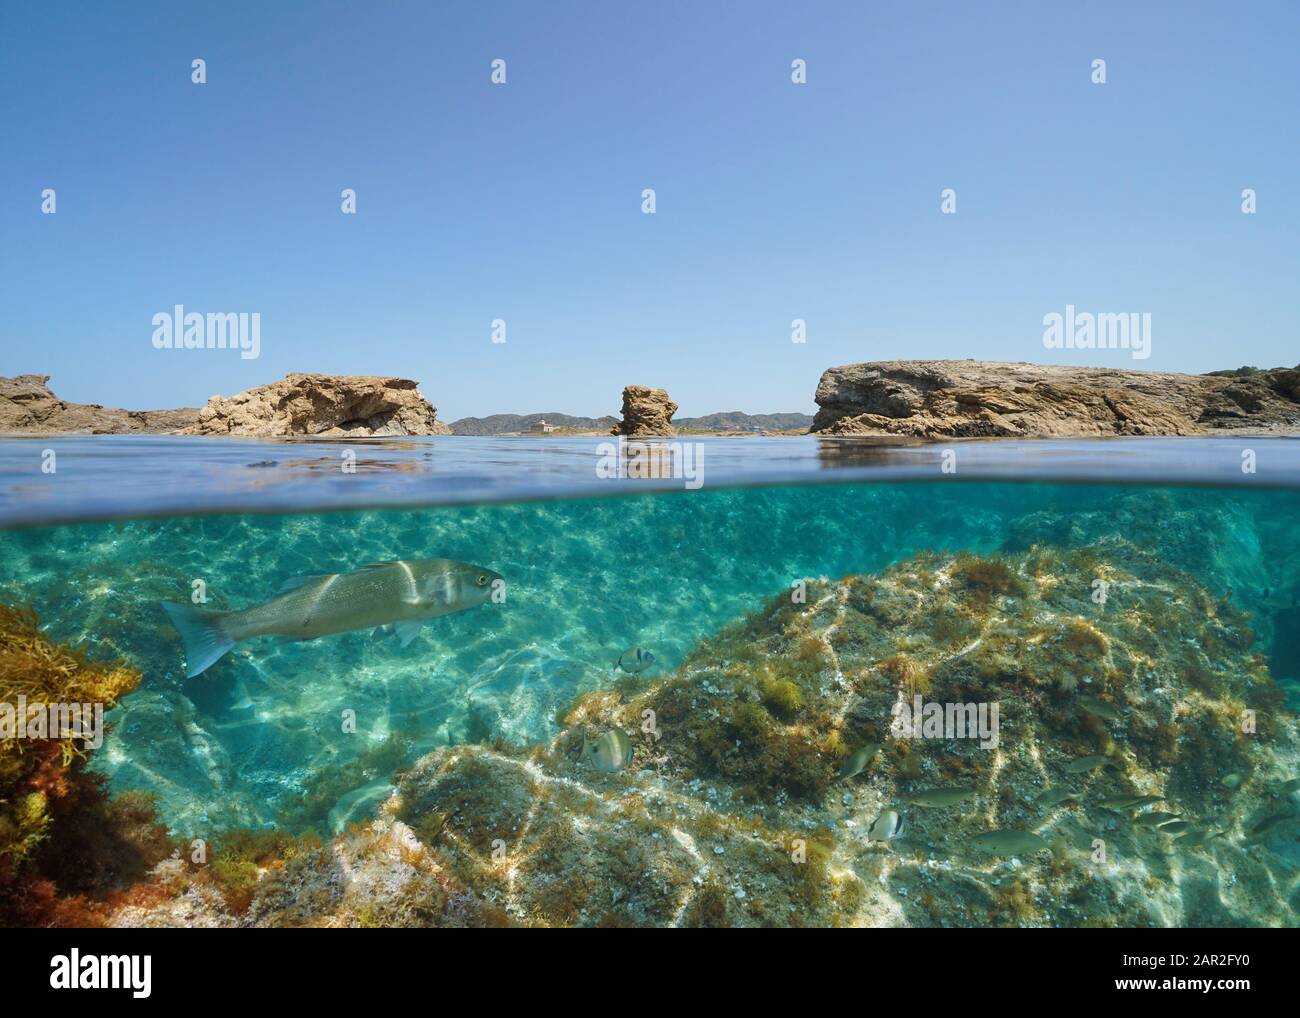 Mer Méditerranée, littoral rocheux avec poissons sous l'eau, vue partagée sous la surface de la mer, Espagne, Costa Brava, Catalogne, El Port de la Selva Banque D'Images